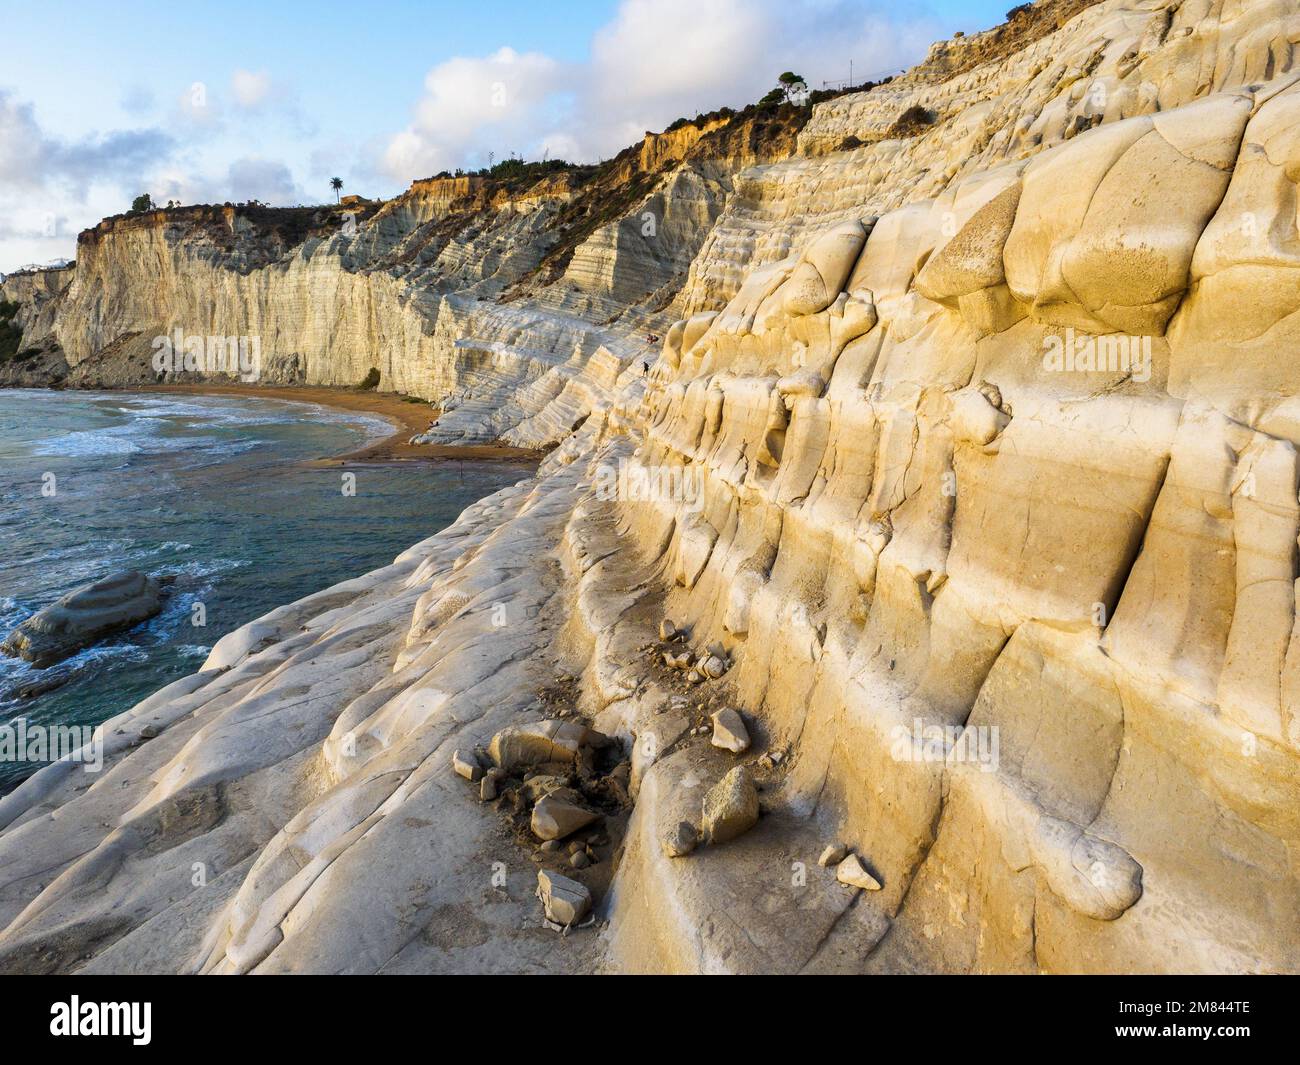 Die Scala dei Turchi (Treppe der Türken) ist eine felsige Klippe an der Küste von Realmonte geformt durch Mergel, ein Sedimentgestein mit charakteristischer weißer Farbe, geformt aus den Tests von planktonischem Foraminifera. Agrigento, Sizilien, Italien Stockfoto